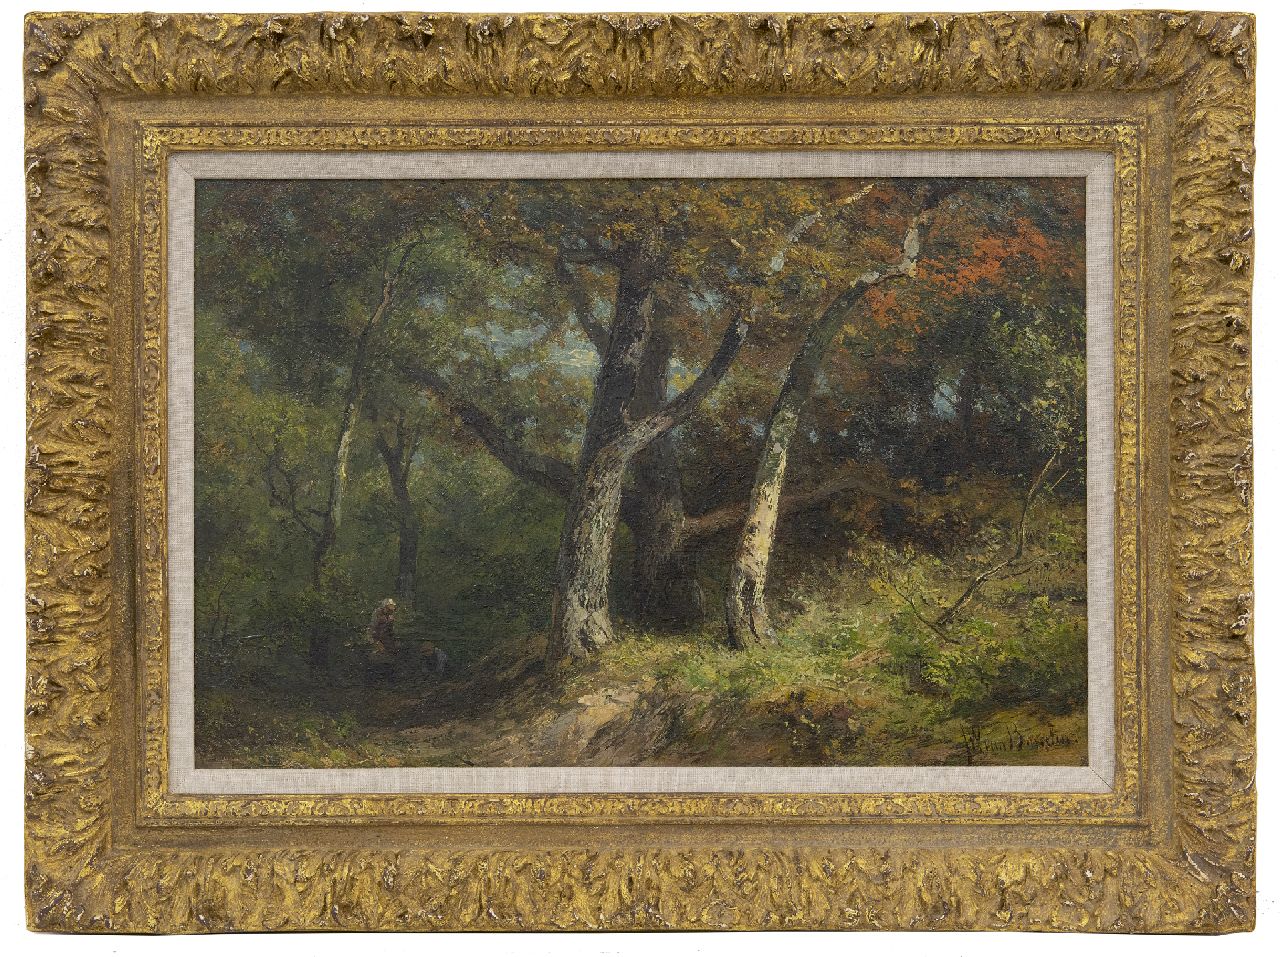 Borselen J.W. van | Jan Willem van Borselen, Houtsprokkelaars op een bospad, olieverf op paneel 27,8 x 42,0 cm, gesigneerd rechtsonder